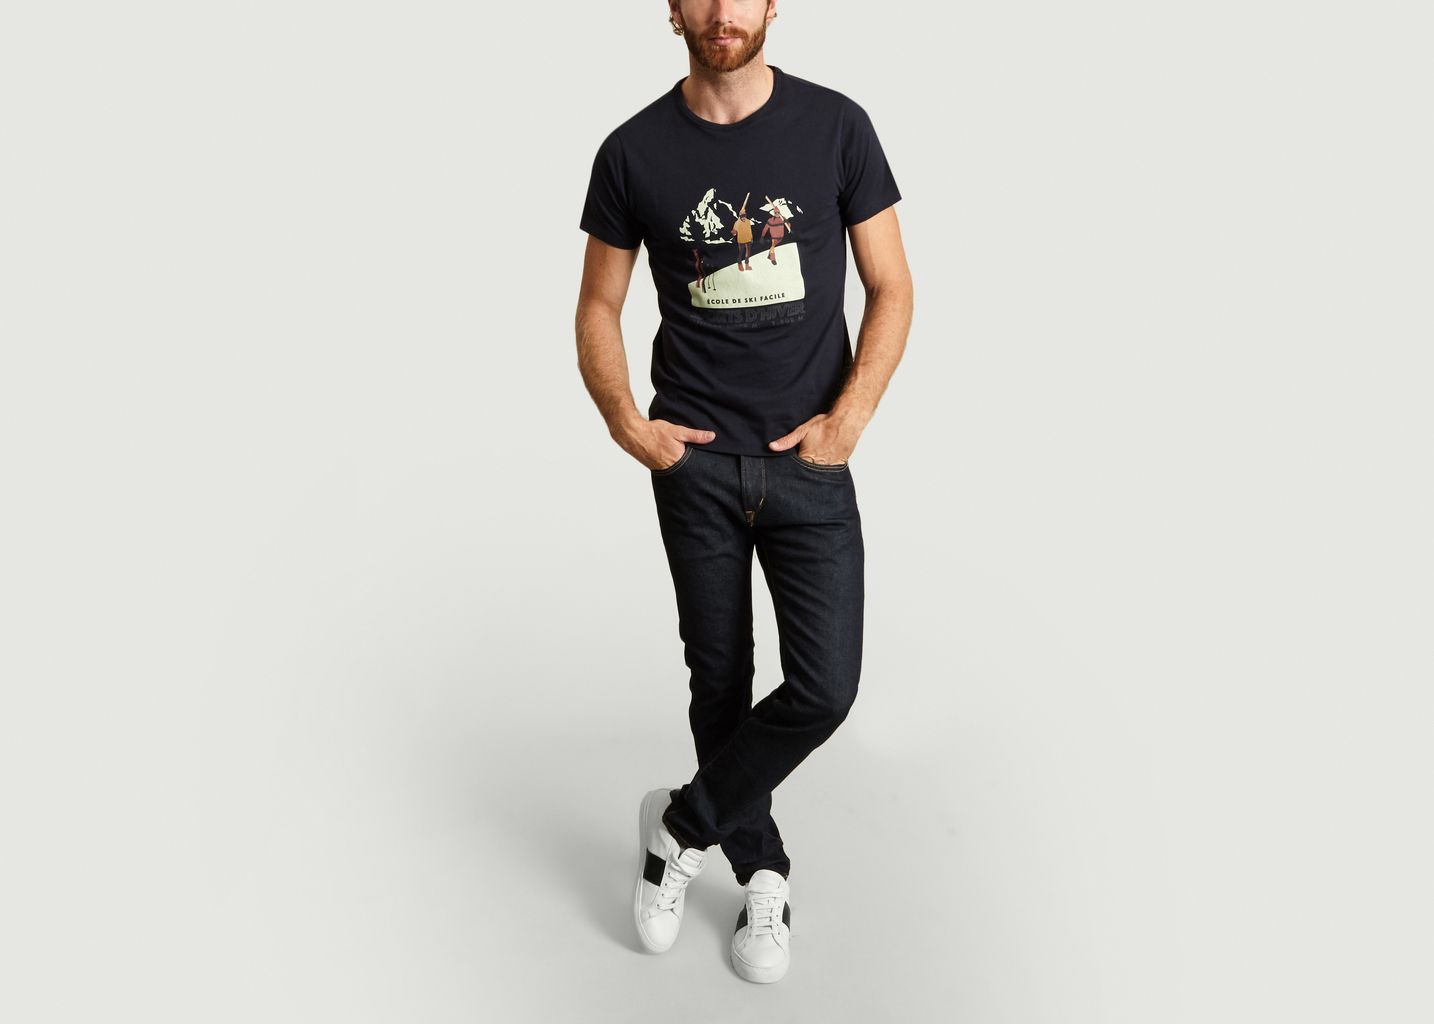 Yann Morzine T-shirt - Les Garçons Faciles